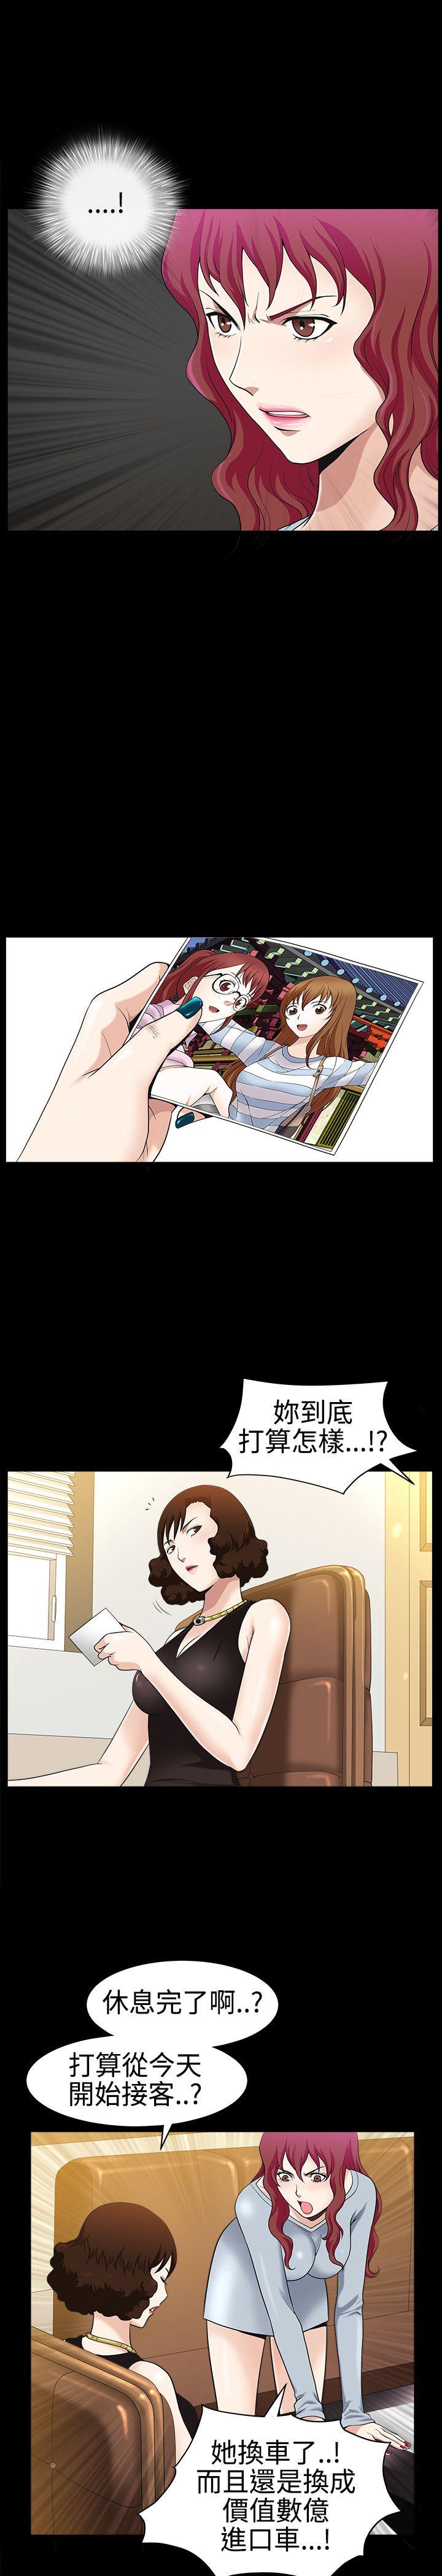 韩国污漫画 人妻性解放3:粗糙的手 第26话 28